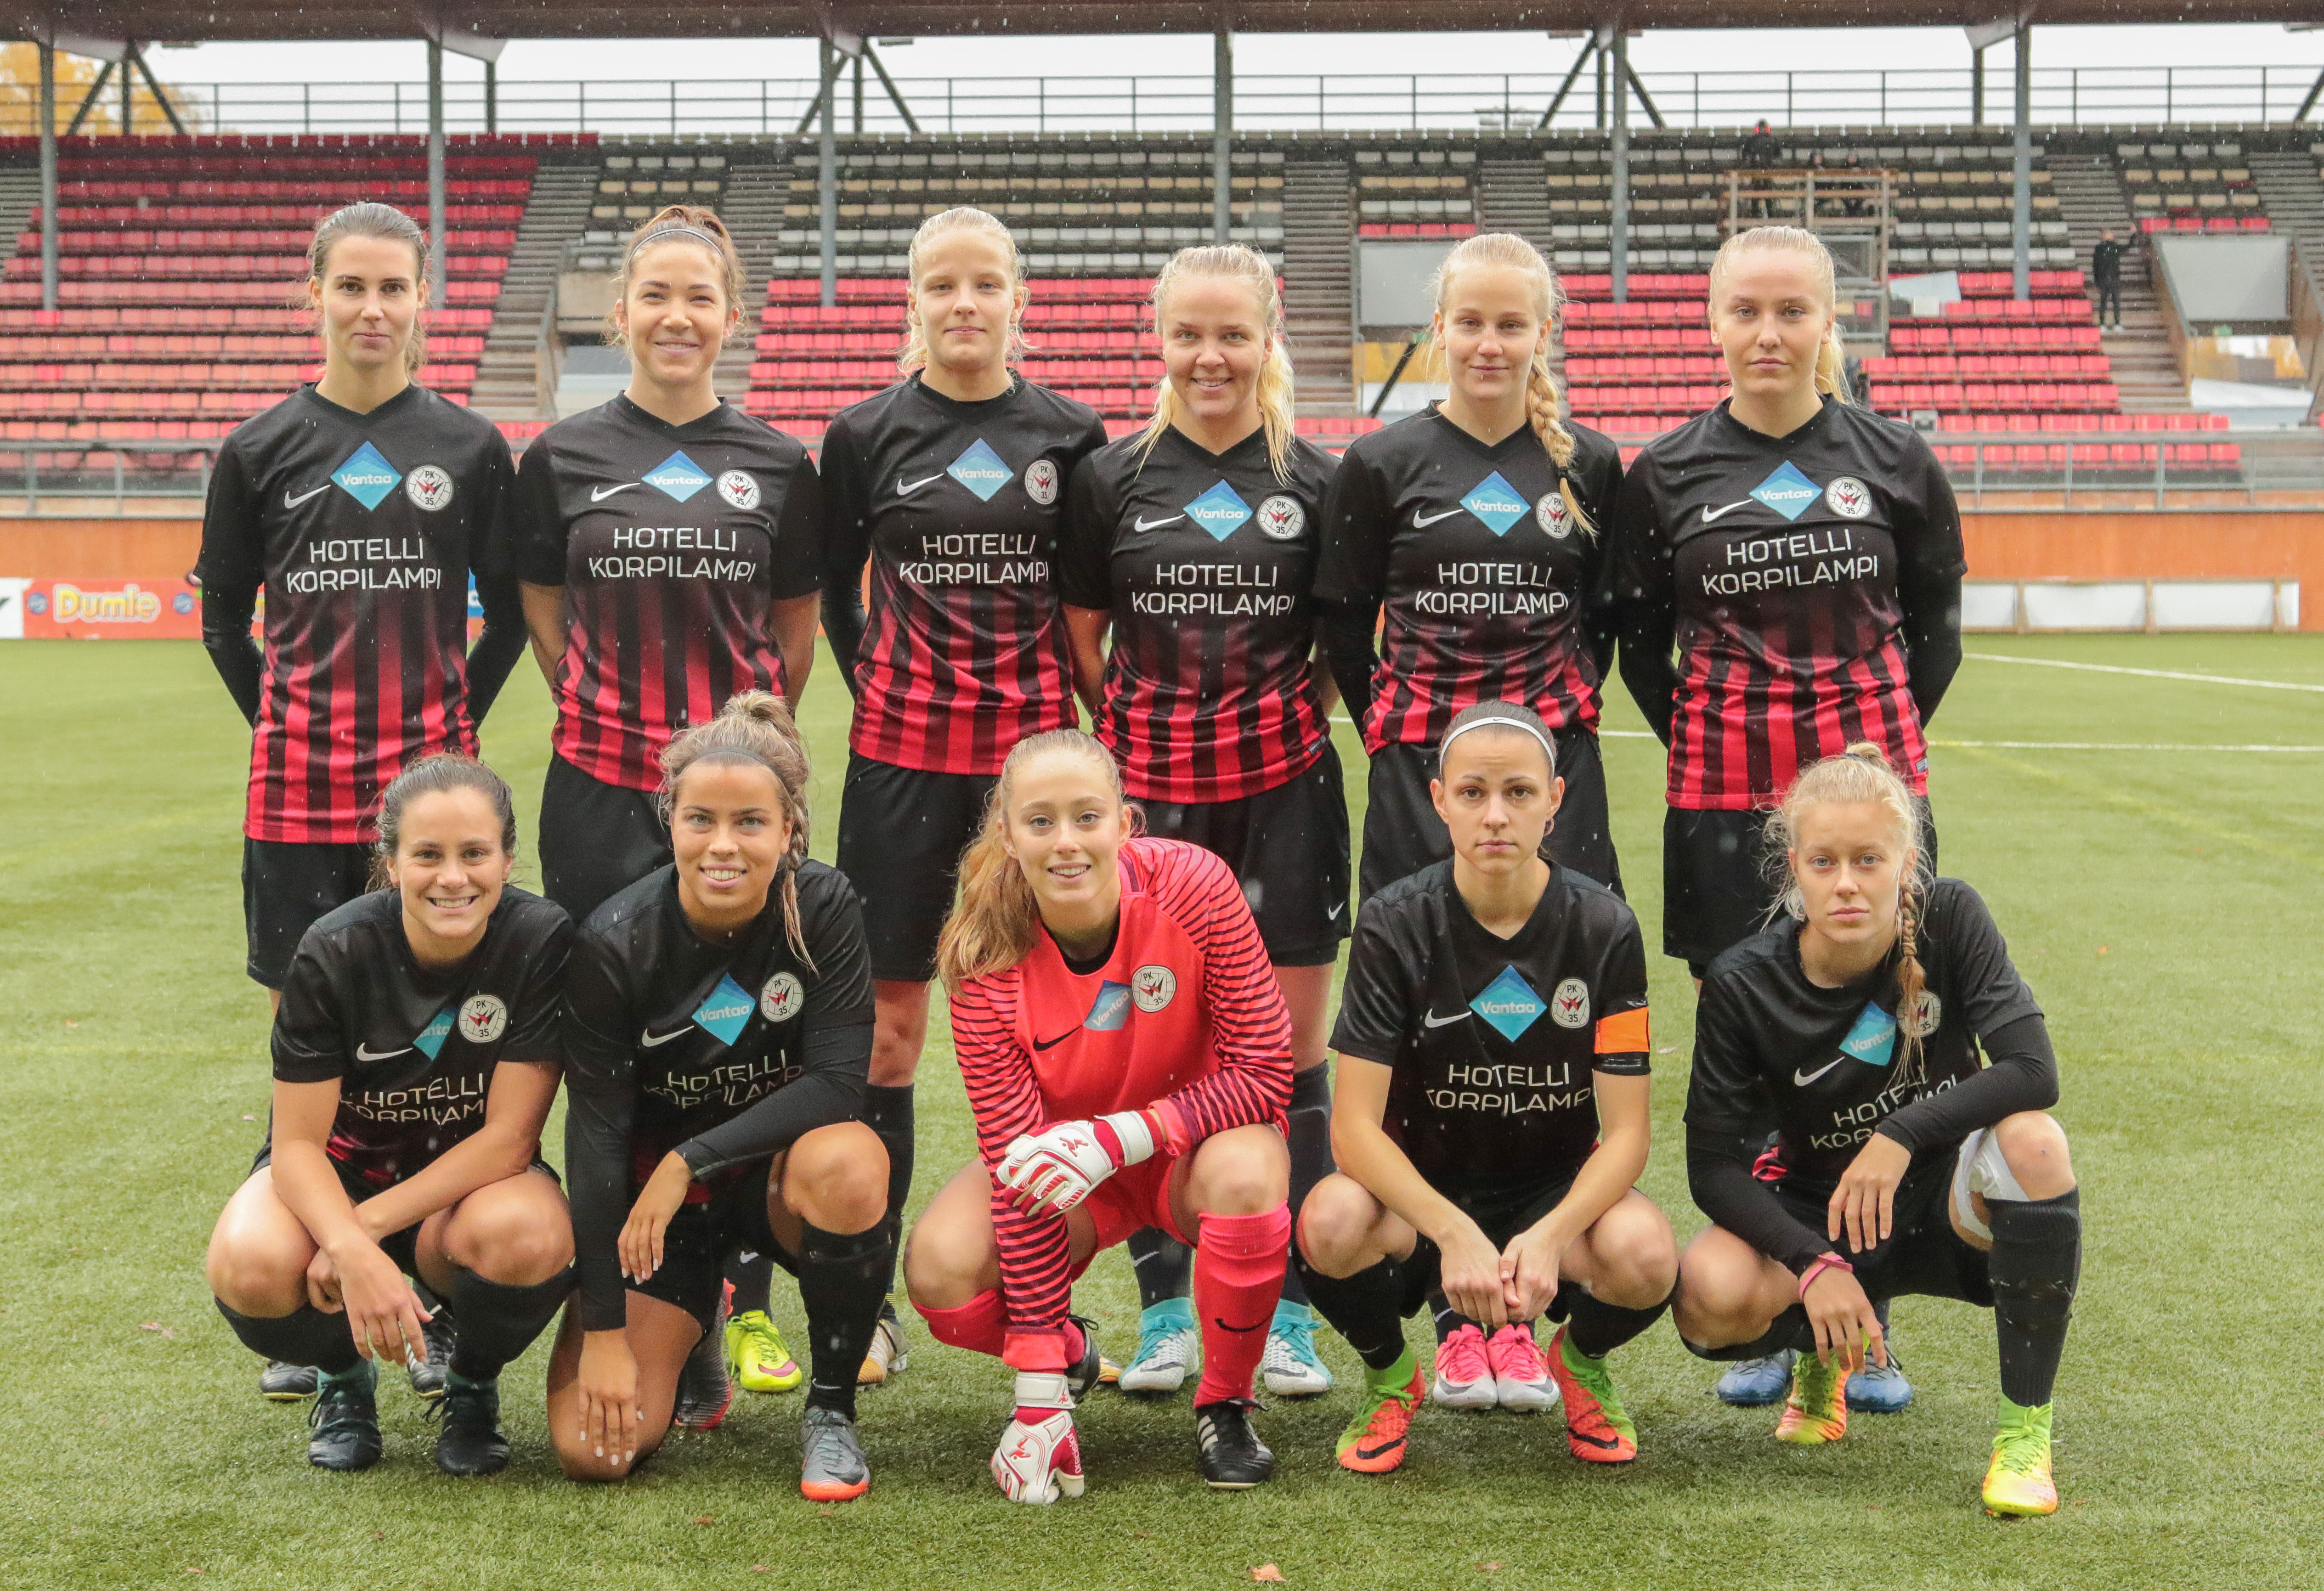 PK 35 Vantaa – HJK, 0 1, Respectr Suopmen Cup, 14.10.2017 10